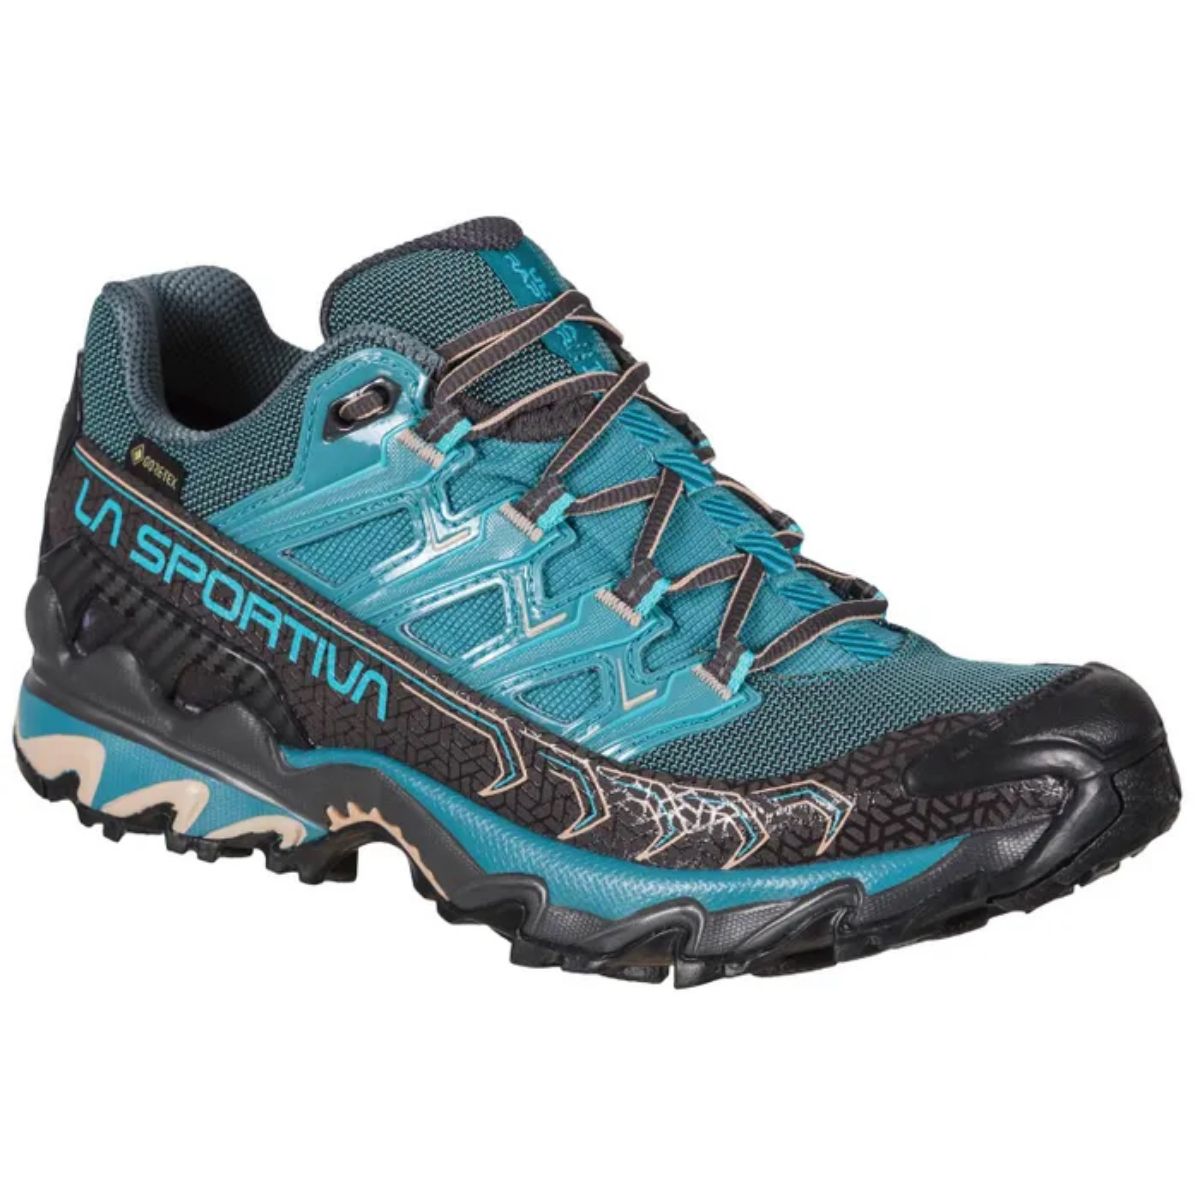 Bilde av Ultra Raptor Gore-tex hiking sko fra La Sportiva. En tursko til dame i en blåfarge. 